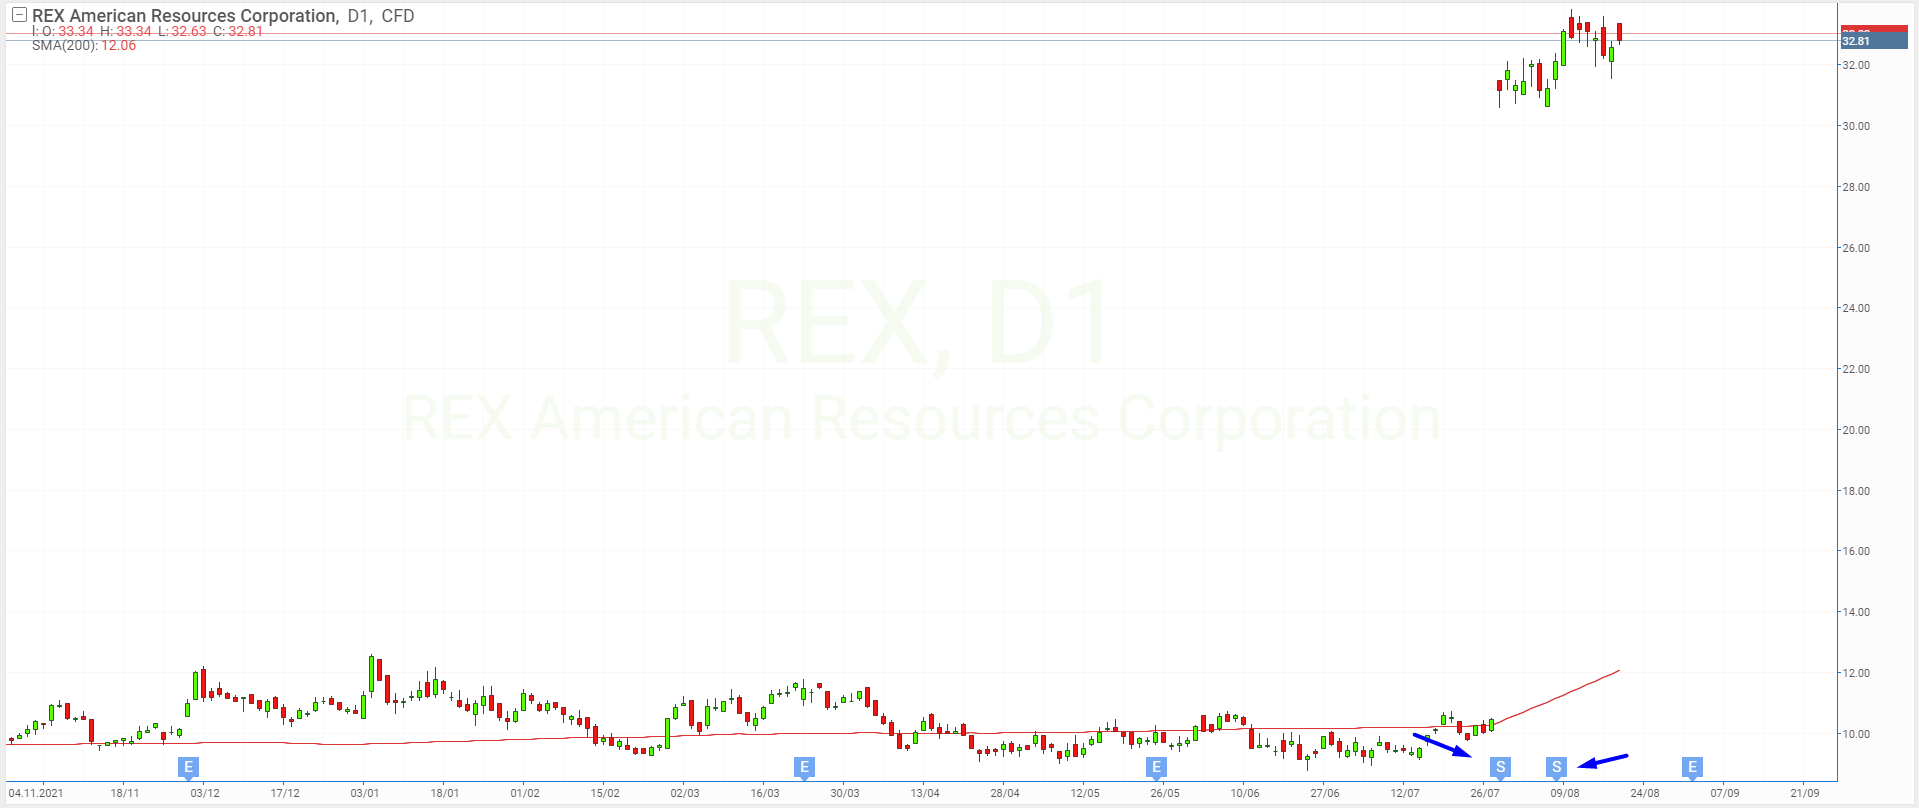 Reverzní rozdělení akcií REX American Resources